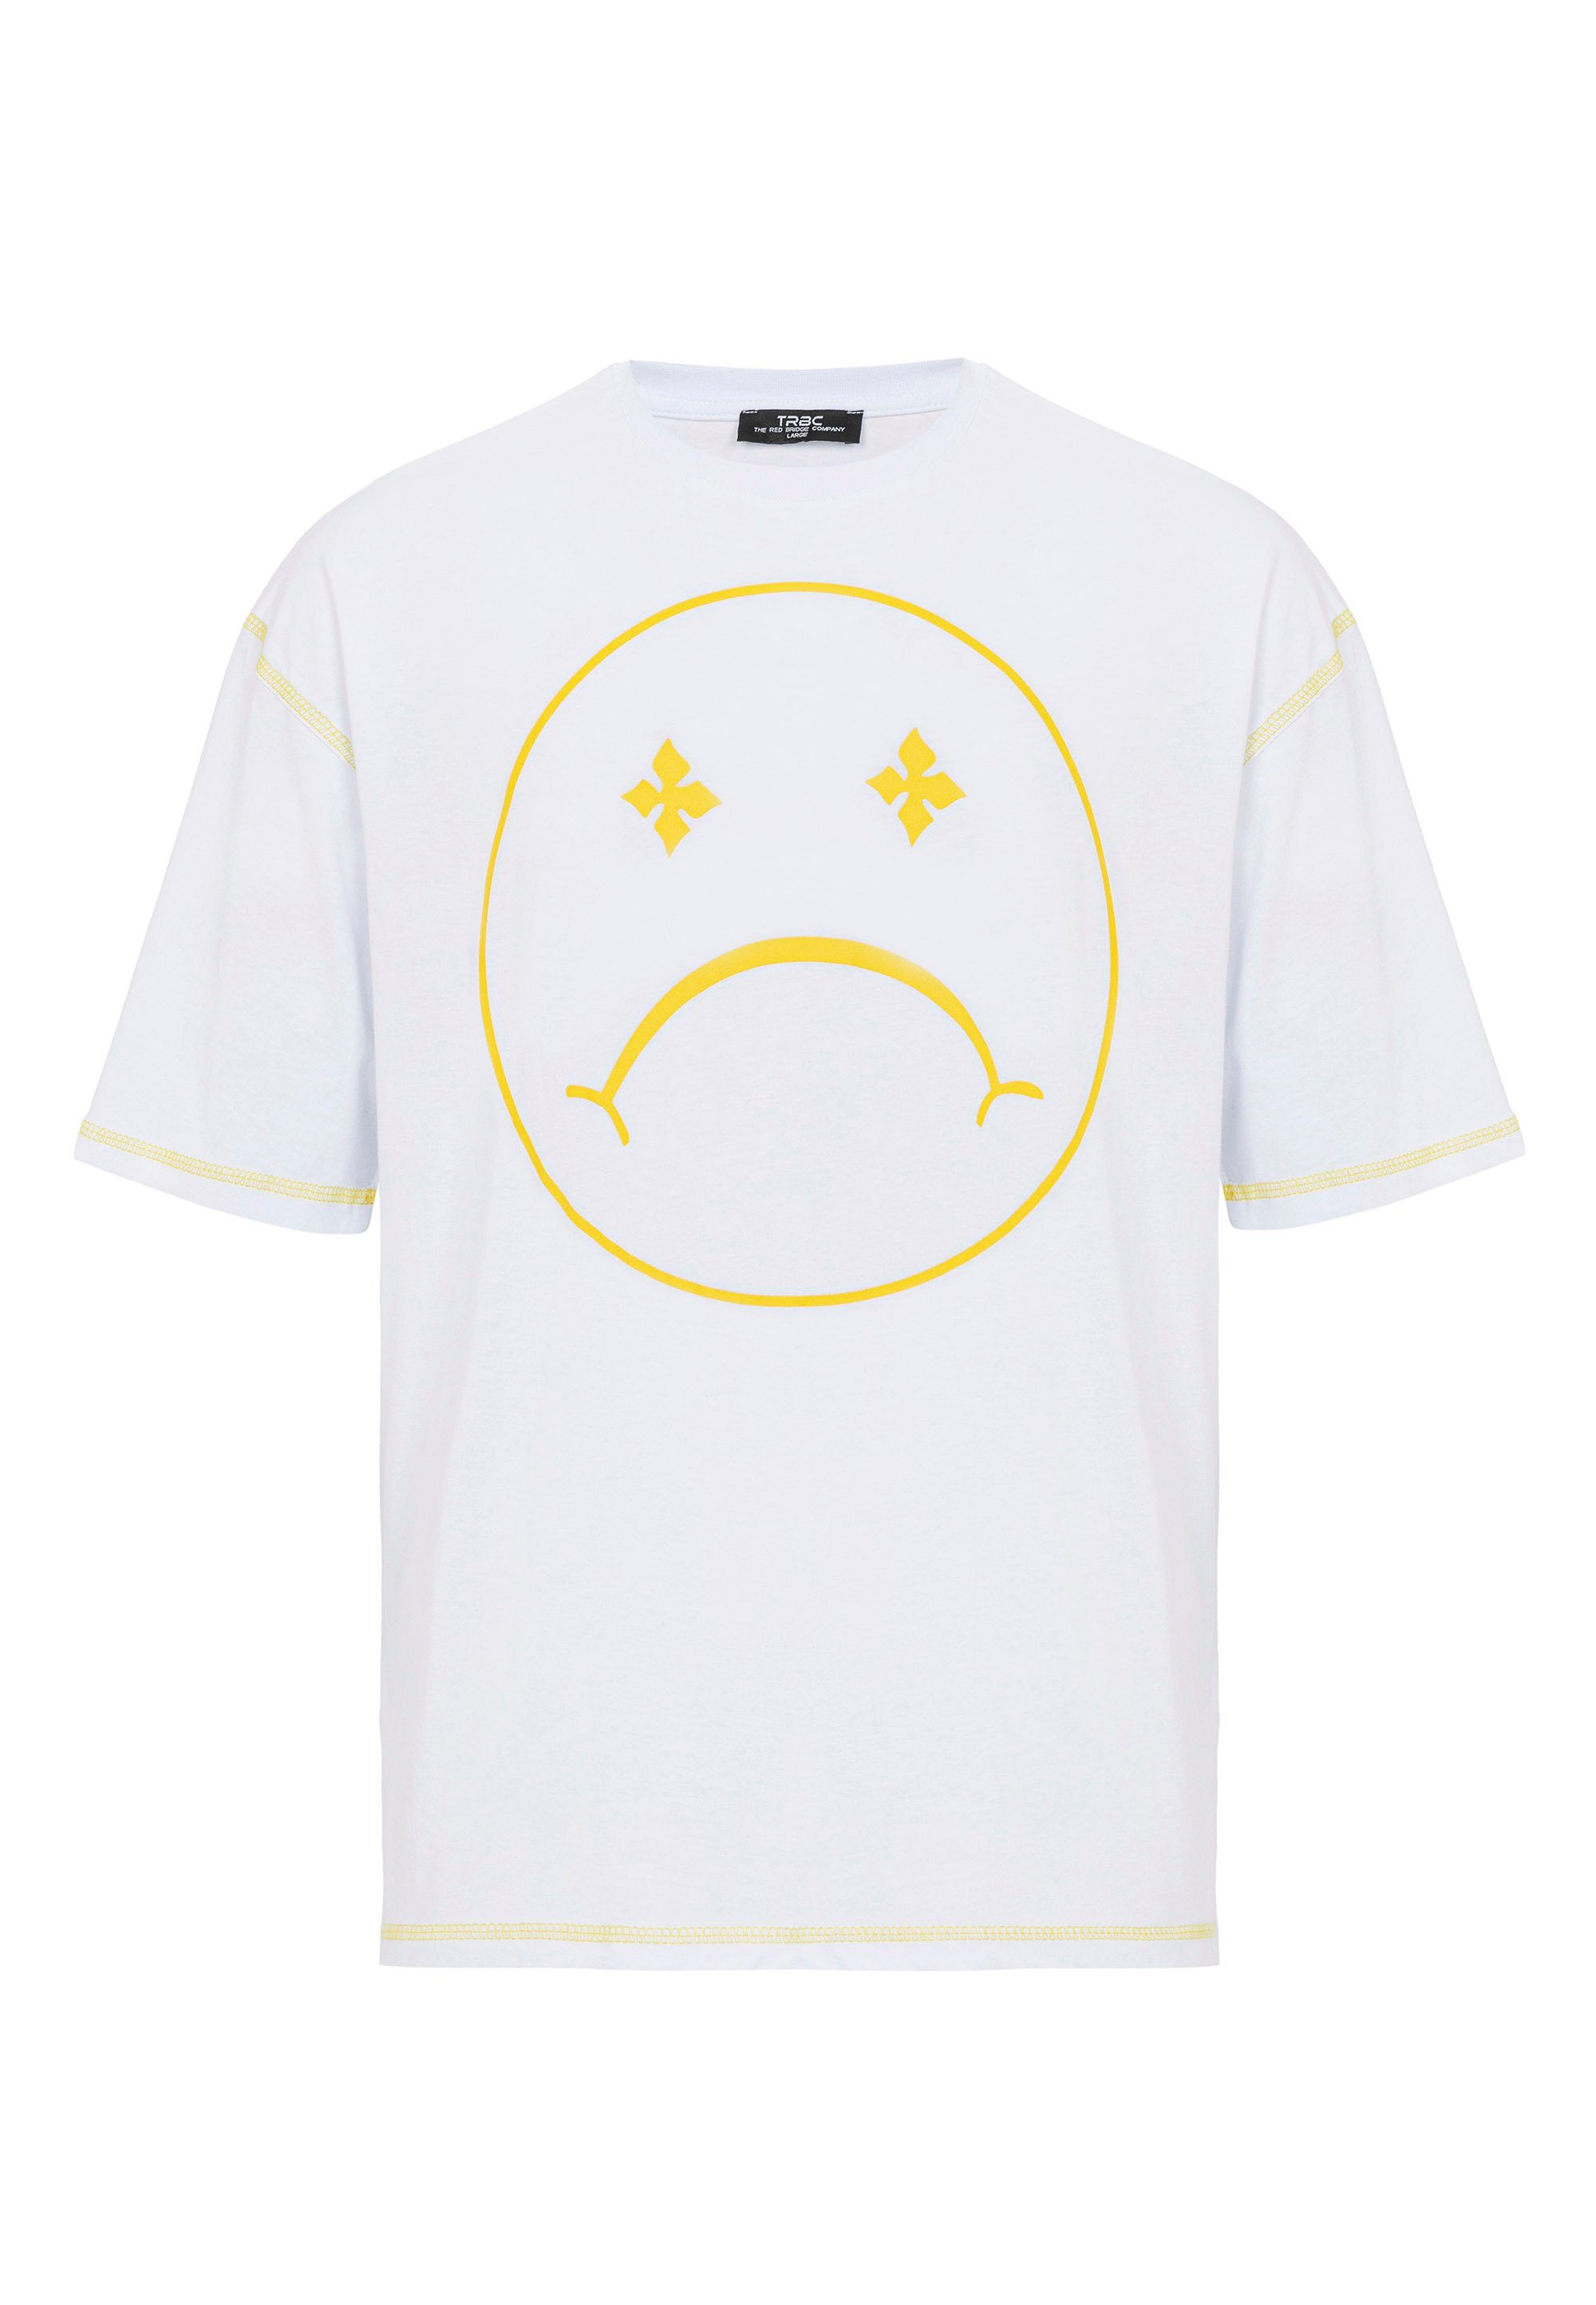 Sad Aberdeen modischem RedBridge mit T-Shirt weiß Smiley-Frontprint